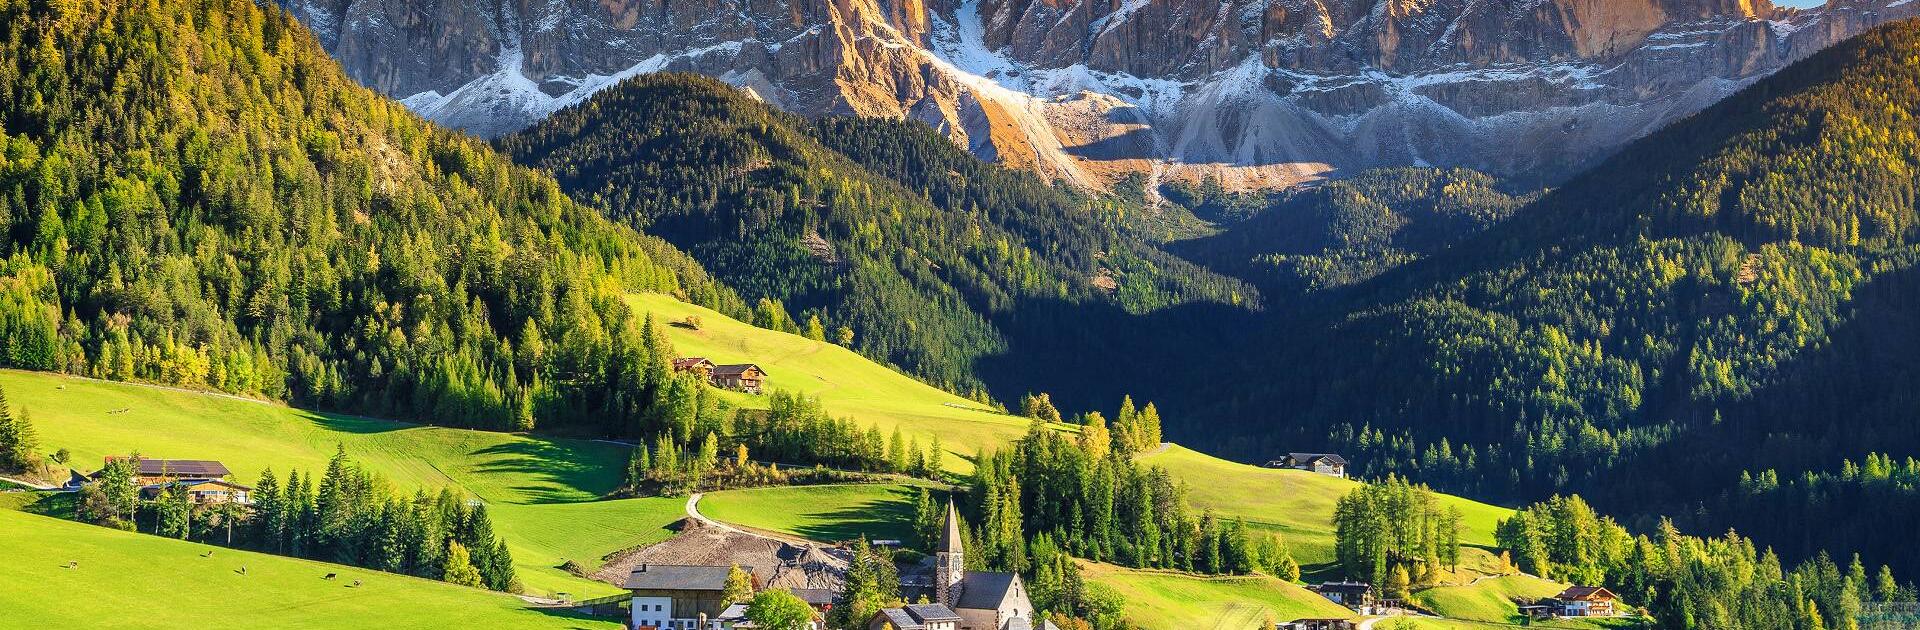 Italy – spa, mountains, agrotourism